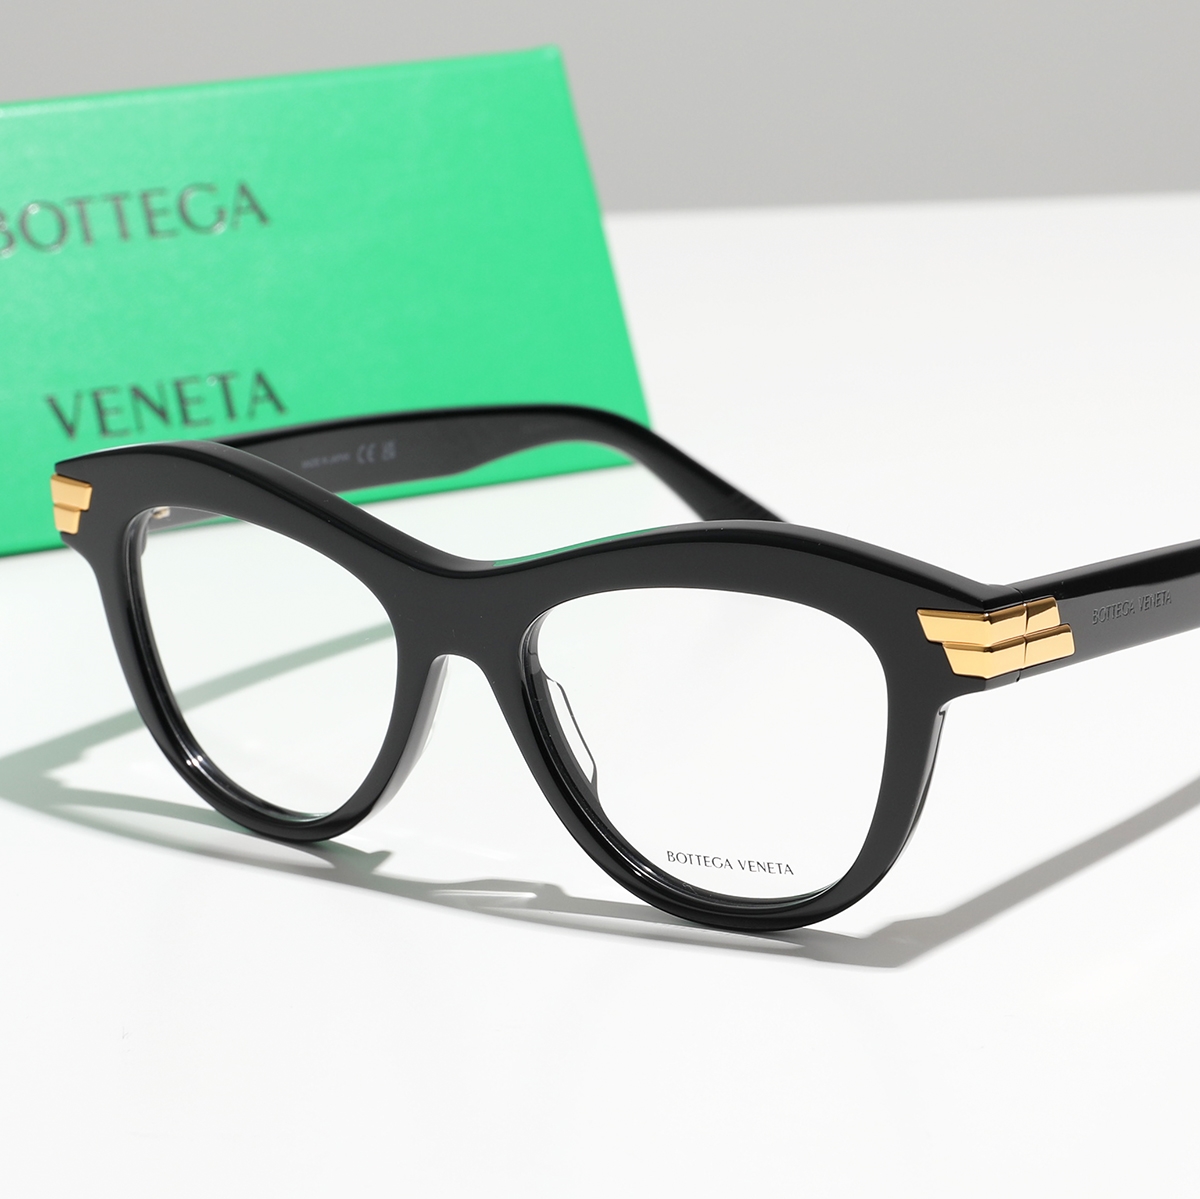 【返品保証対象】BOTTEGA VENETA ボッテガヴェネタ メガネ BV1105O レディース ボストン型 伊達メガネ 眼鏡 めがね 黒縁メガネ ロゴ アイウェア 001